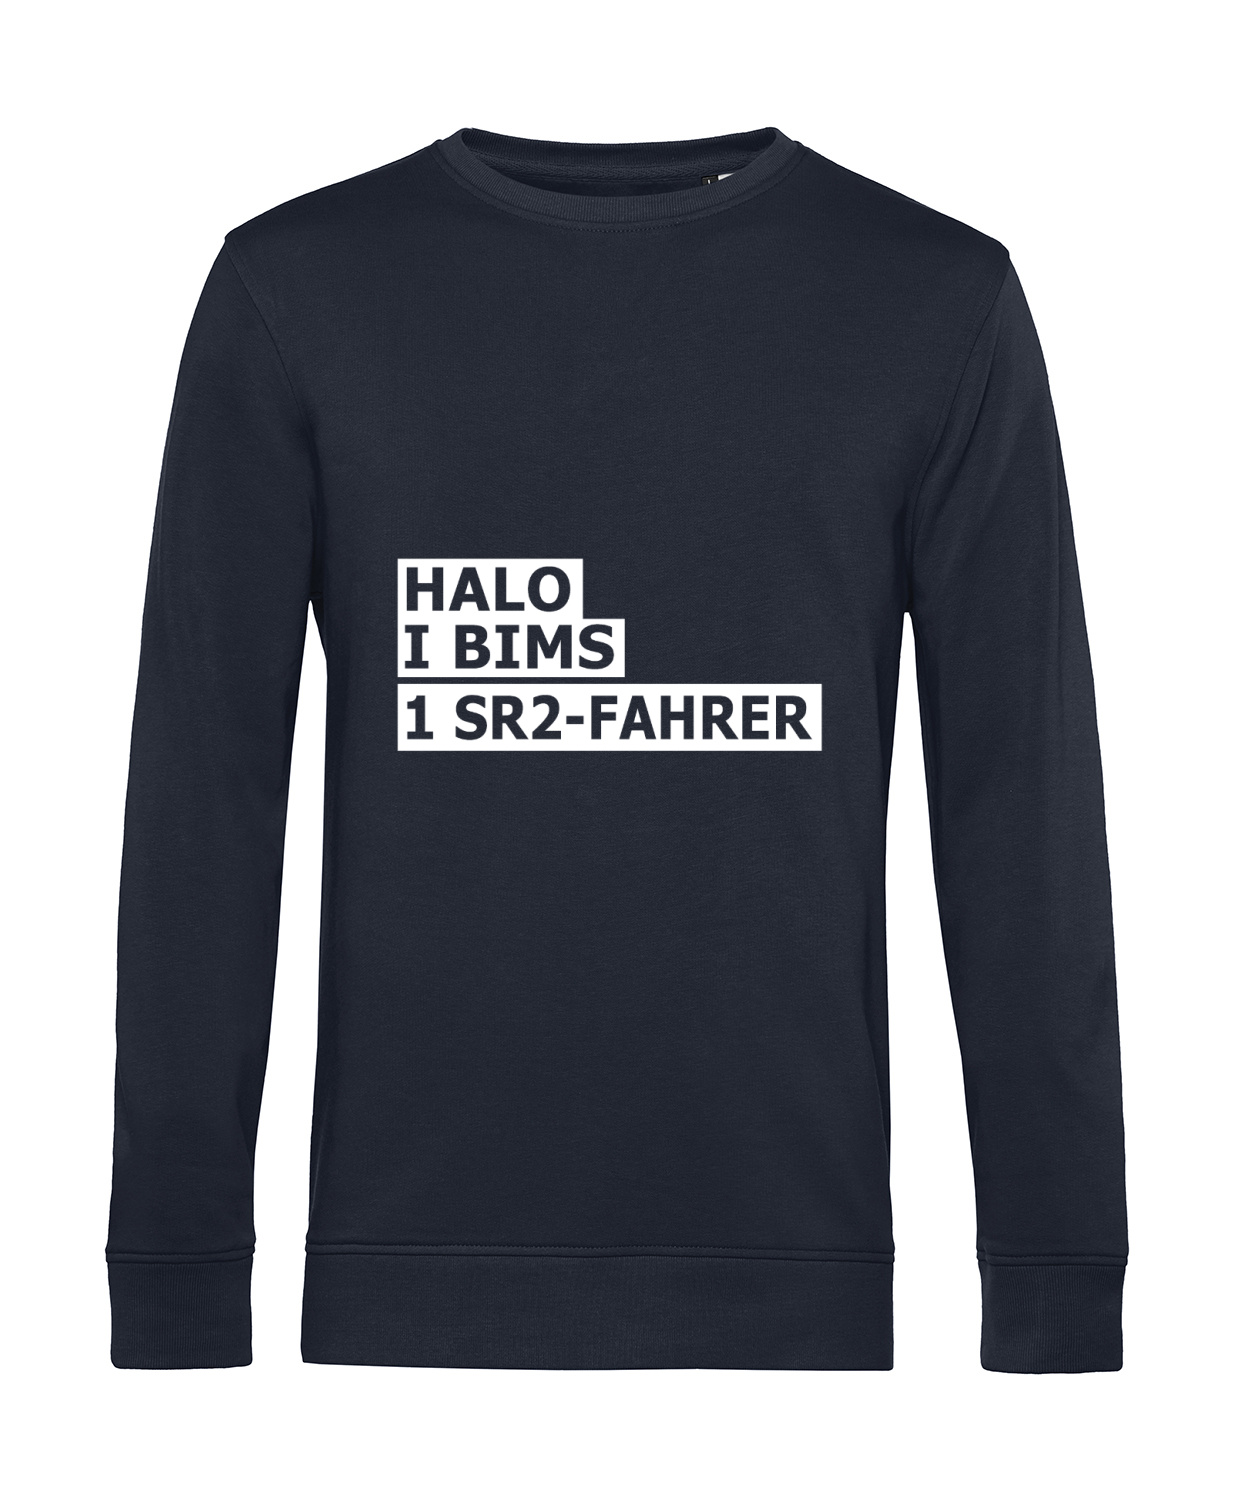 Nachhaltiges Sweatshirt Herren 2Takter - Halo I bims 1 SR2-Fahrer